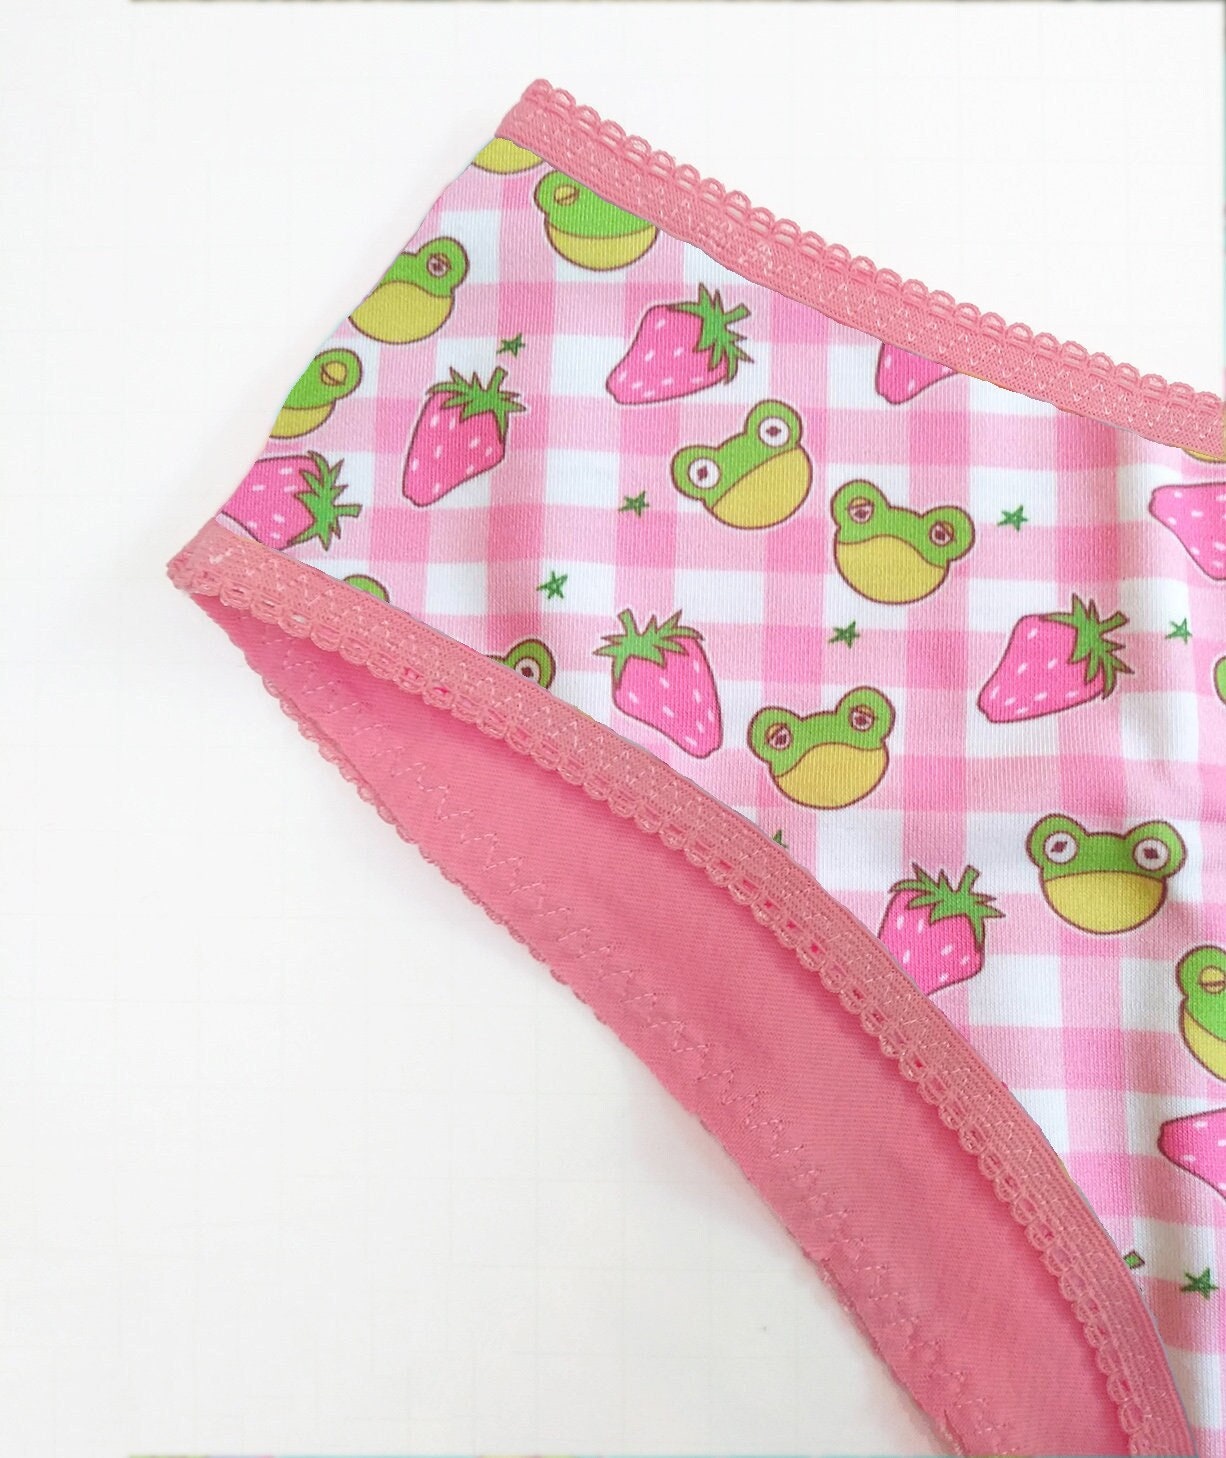 Flowies Sport Period Panties Pink Period Underwear Eco Friendly